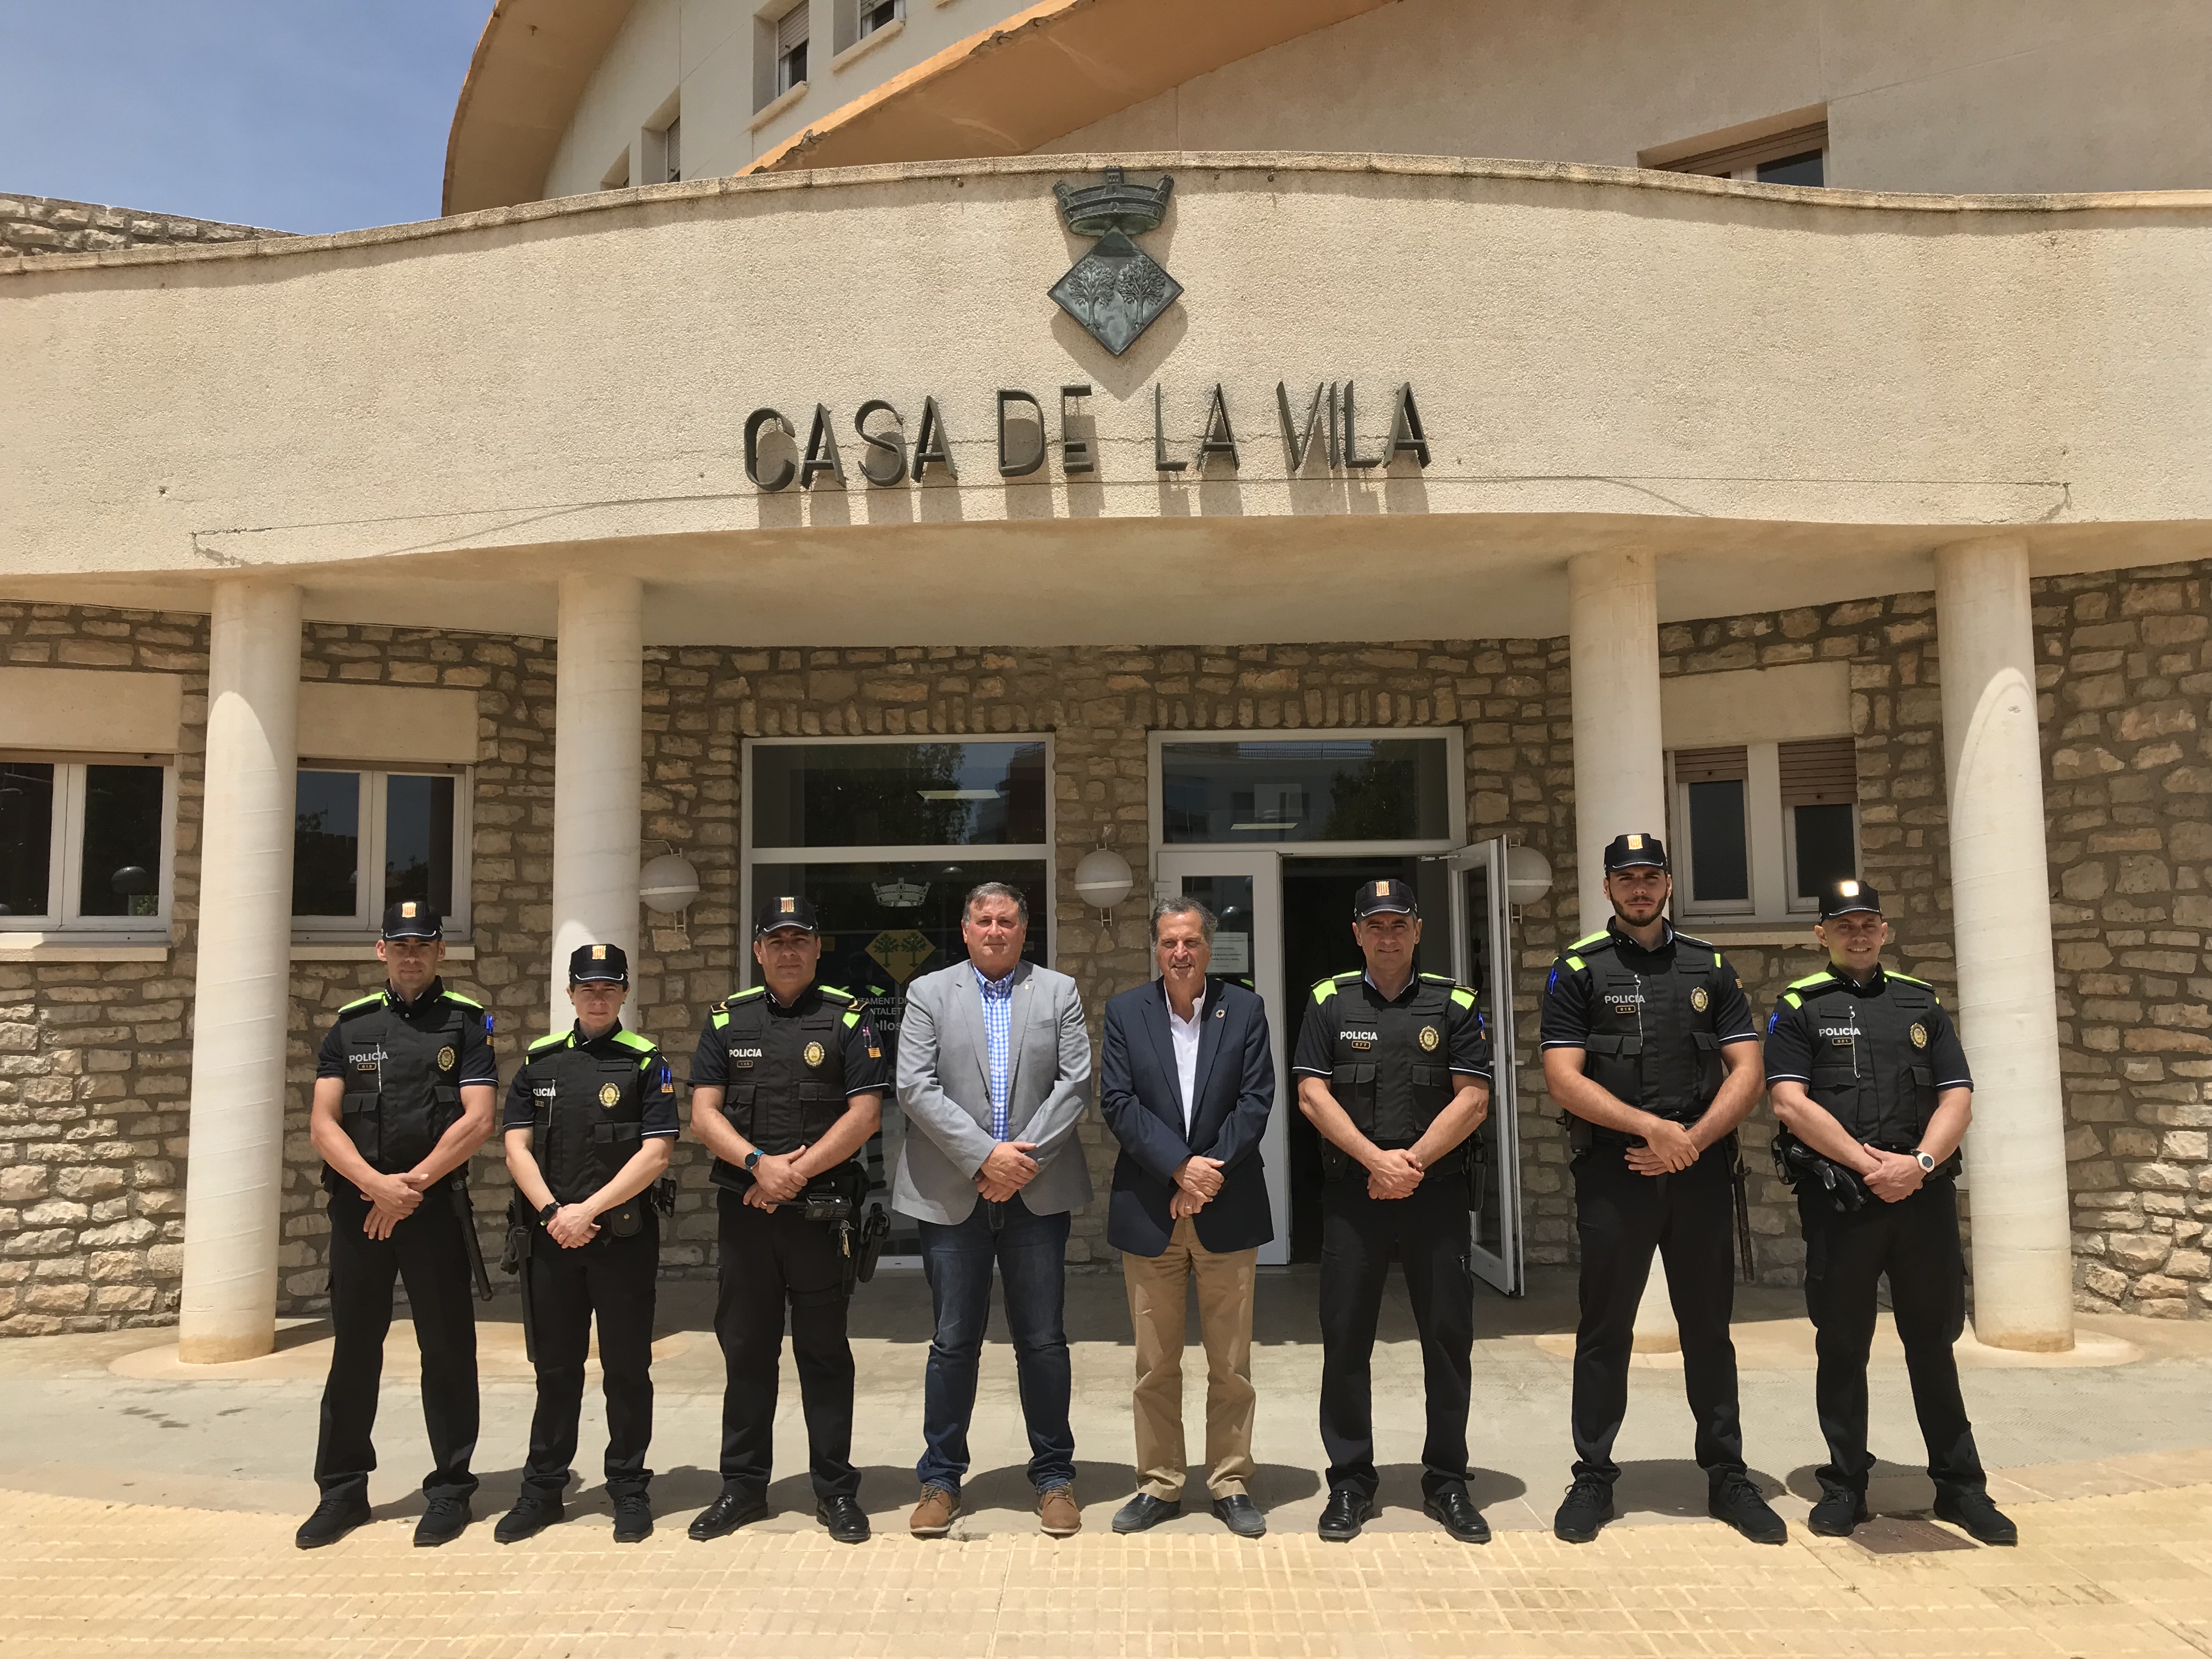 La Policia Local de Vandellòs i l’Hospitalet de l’Infant es reforça aquest estiu amb quatre agents més